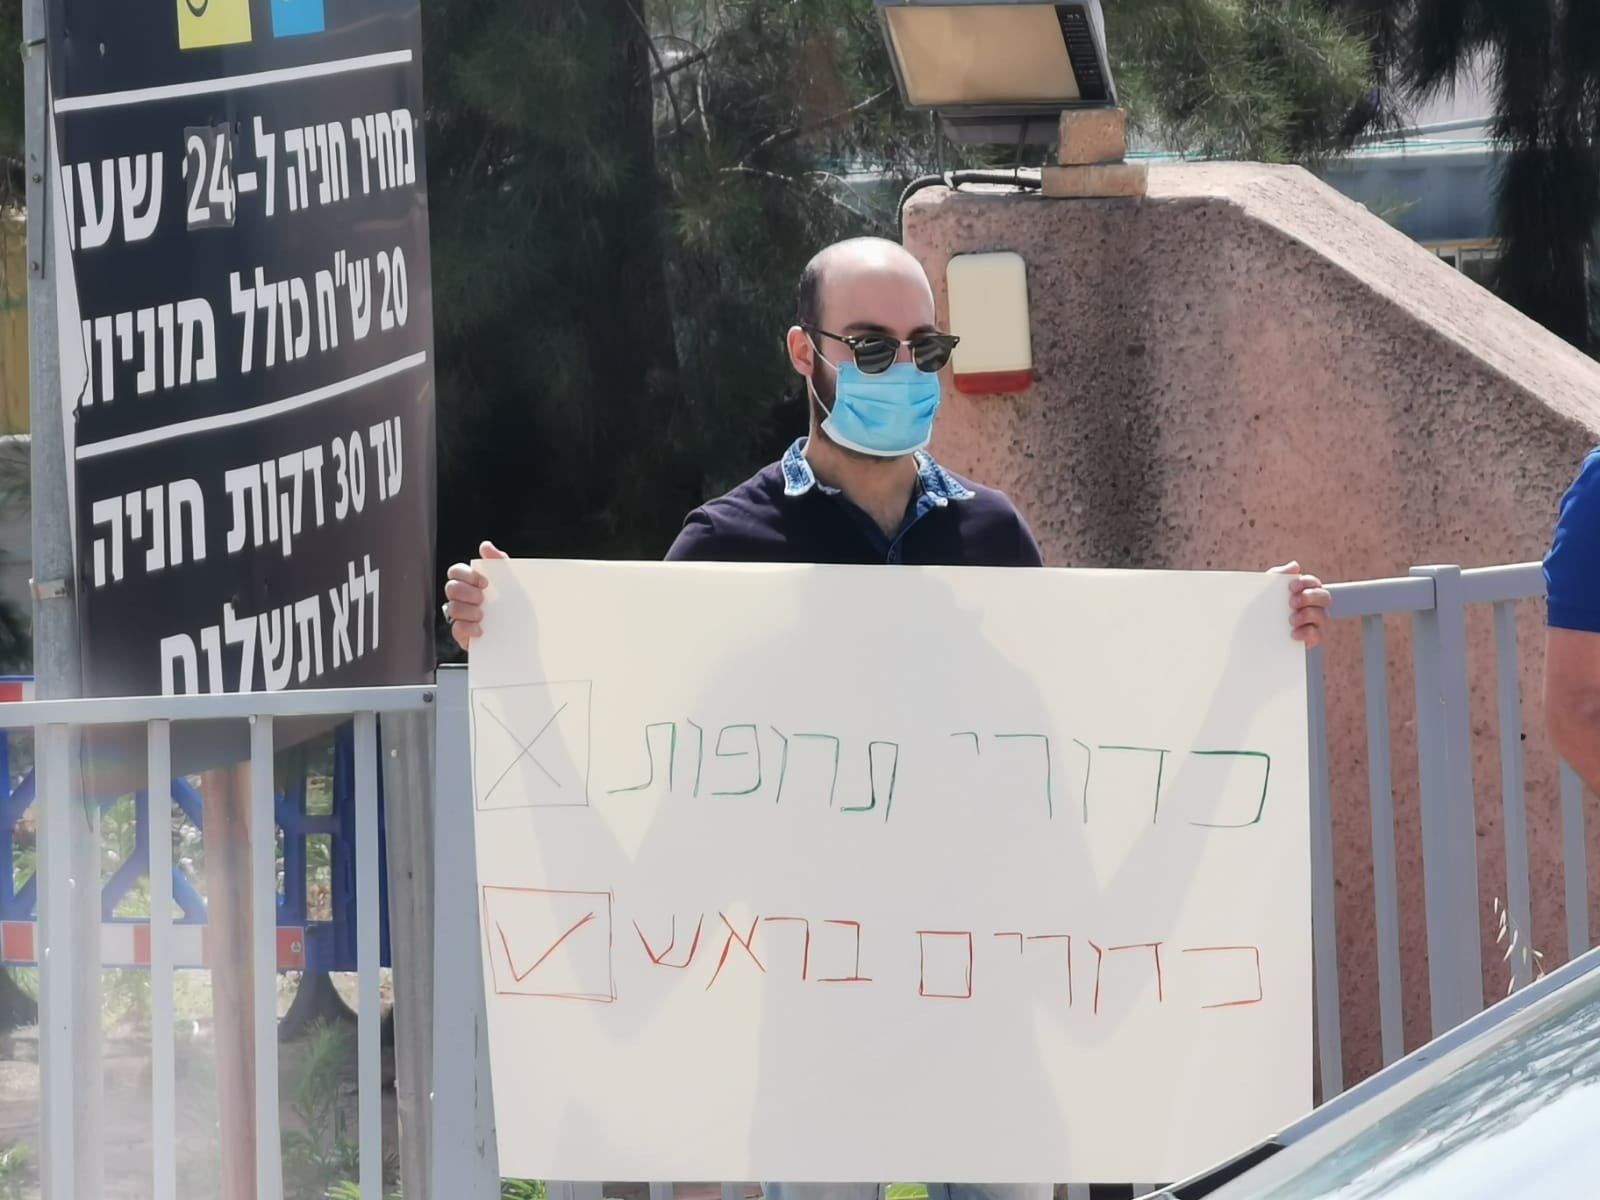 تظاهرة مقابل مستشفى تل هشومير تنديدًا بقتل يونس دون رحمة او شفقة -15